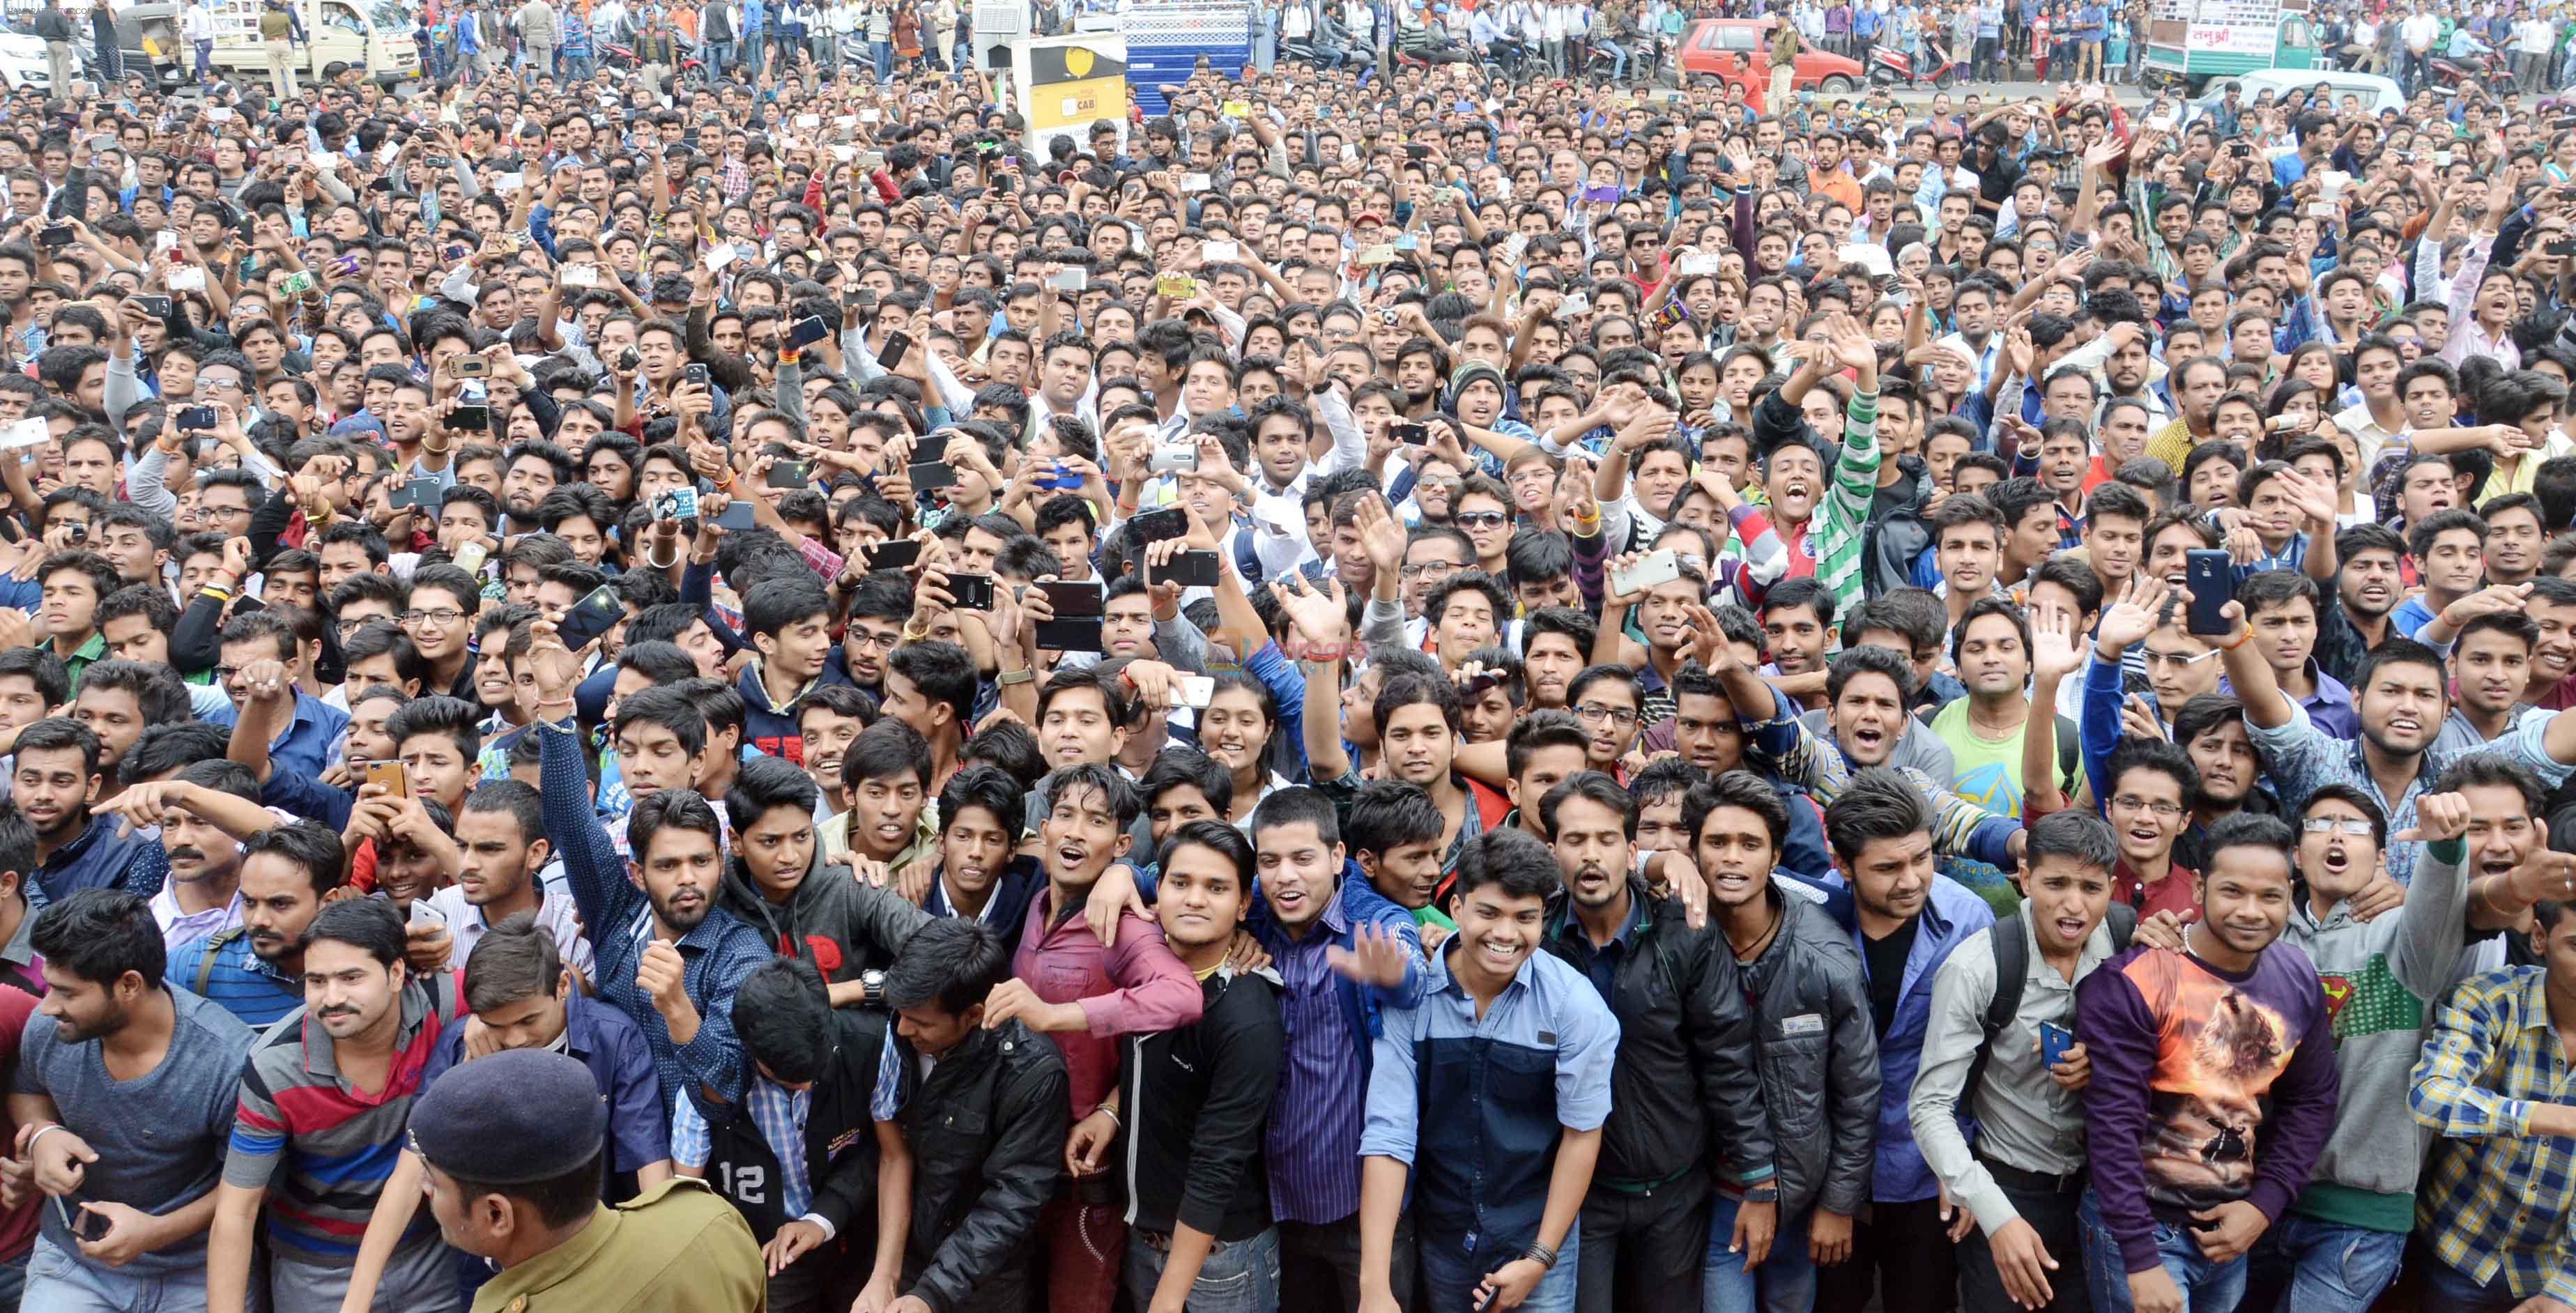 Ranveer singh at bhopal on 28th Nov 2015